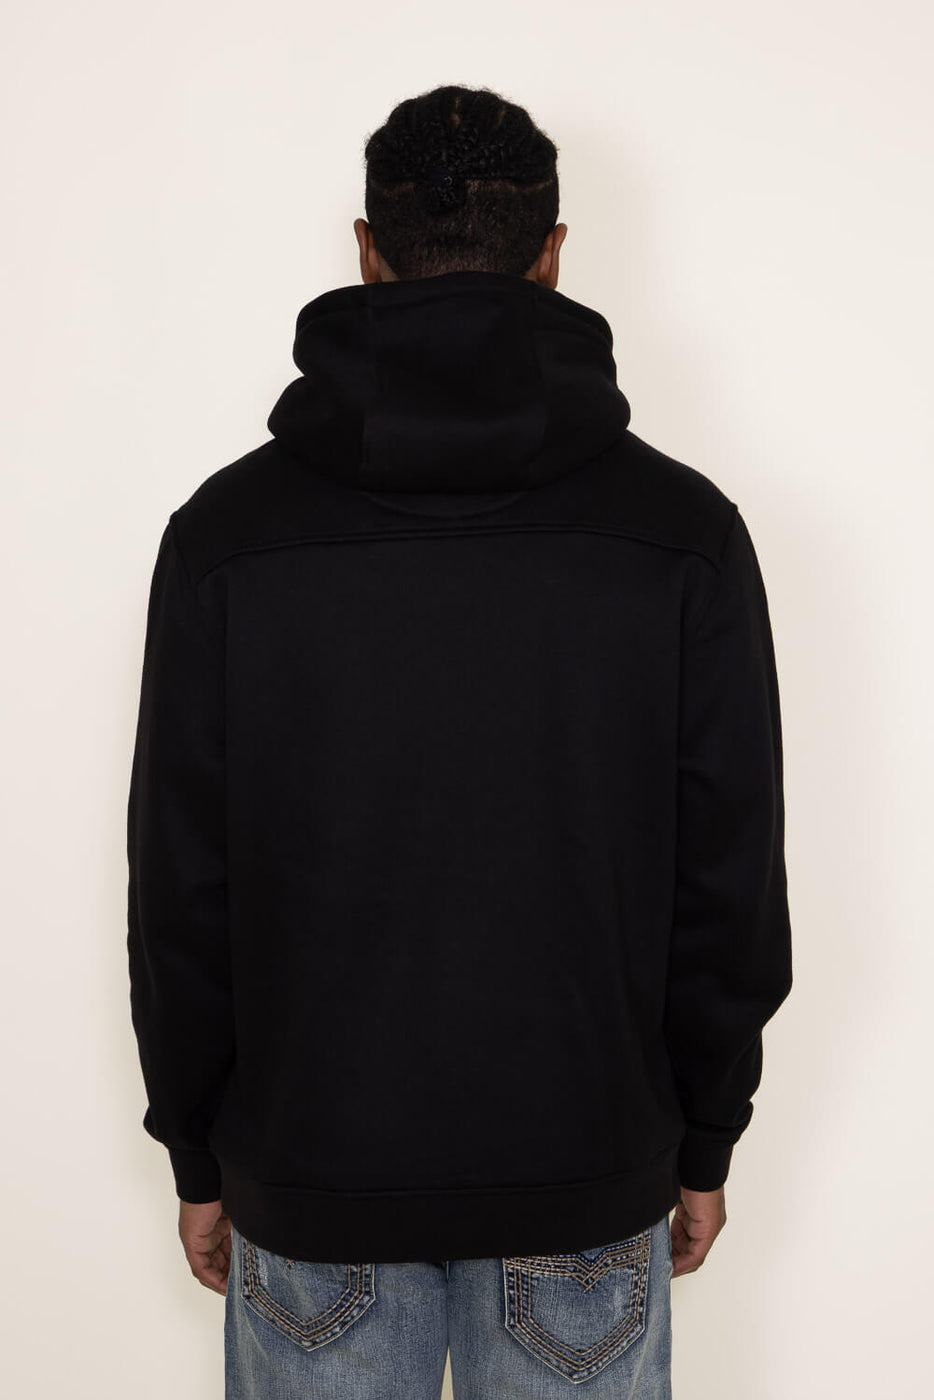 Loose Fit Hooded Jacket - Black - Men | H&M US